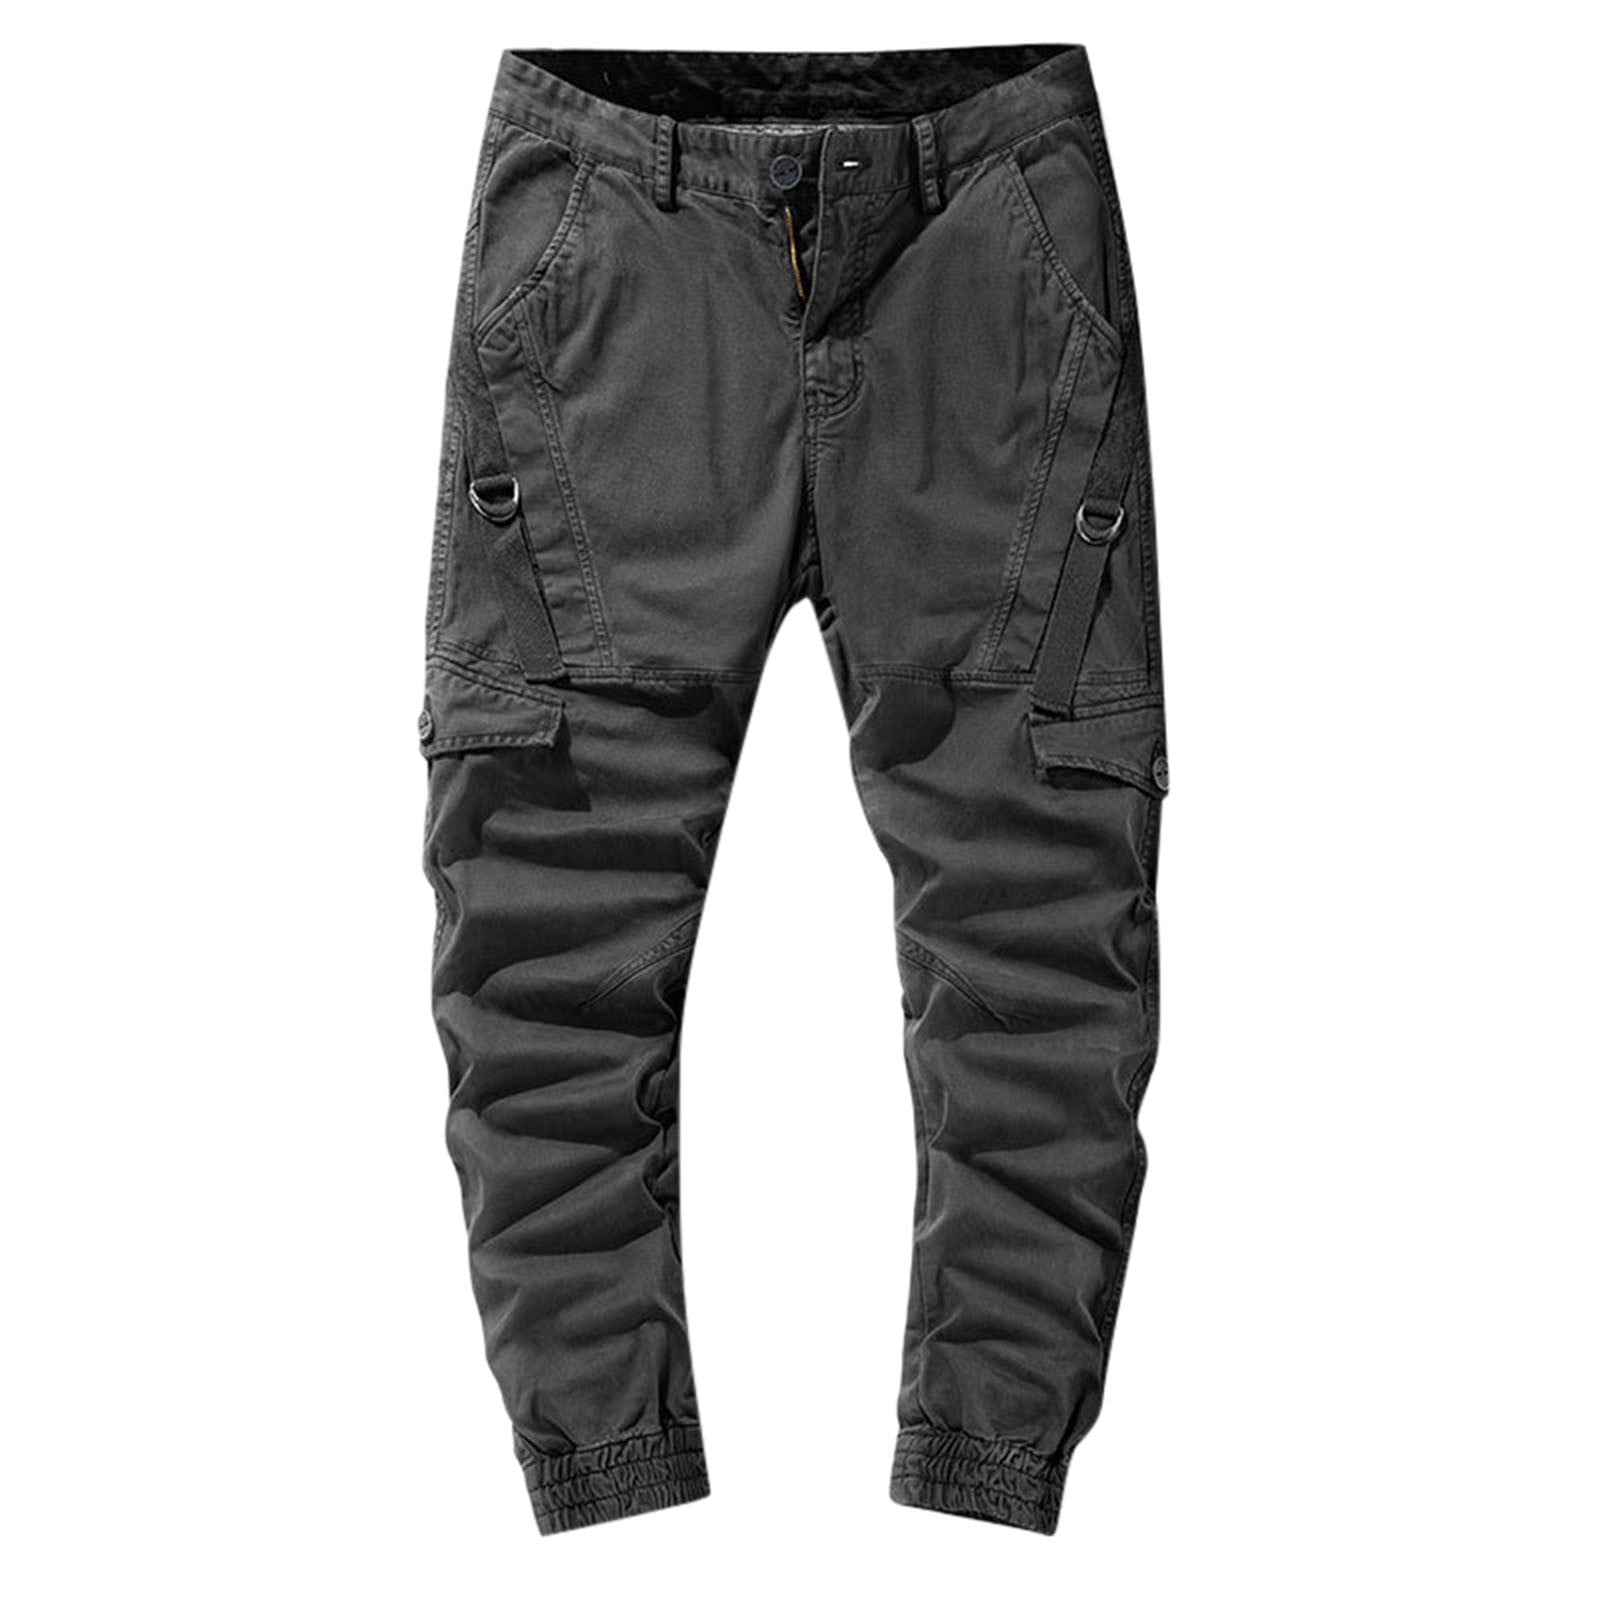 Pedort Cargo Pants for Men Slim Fit Men Outdoor Cargo Pant Lightweight ...